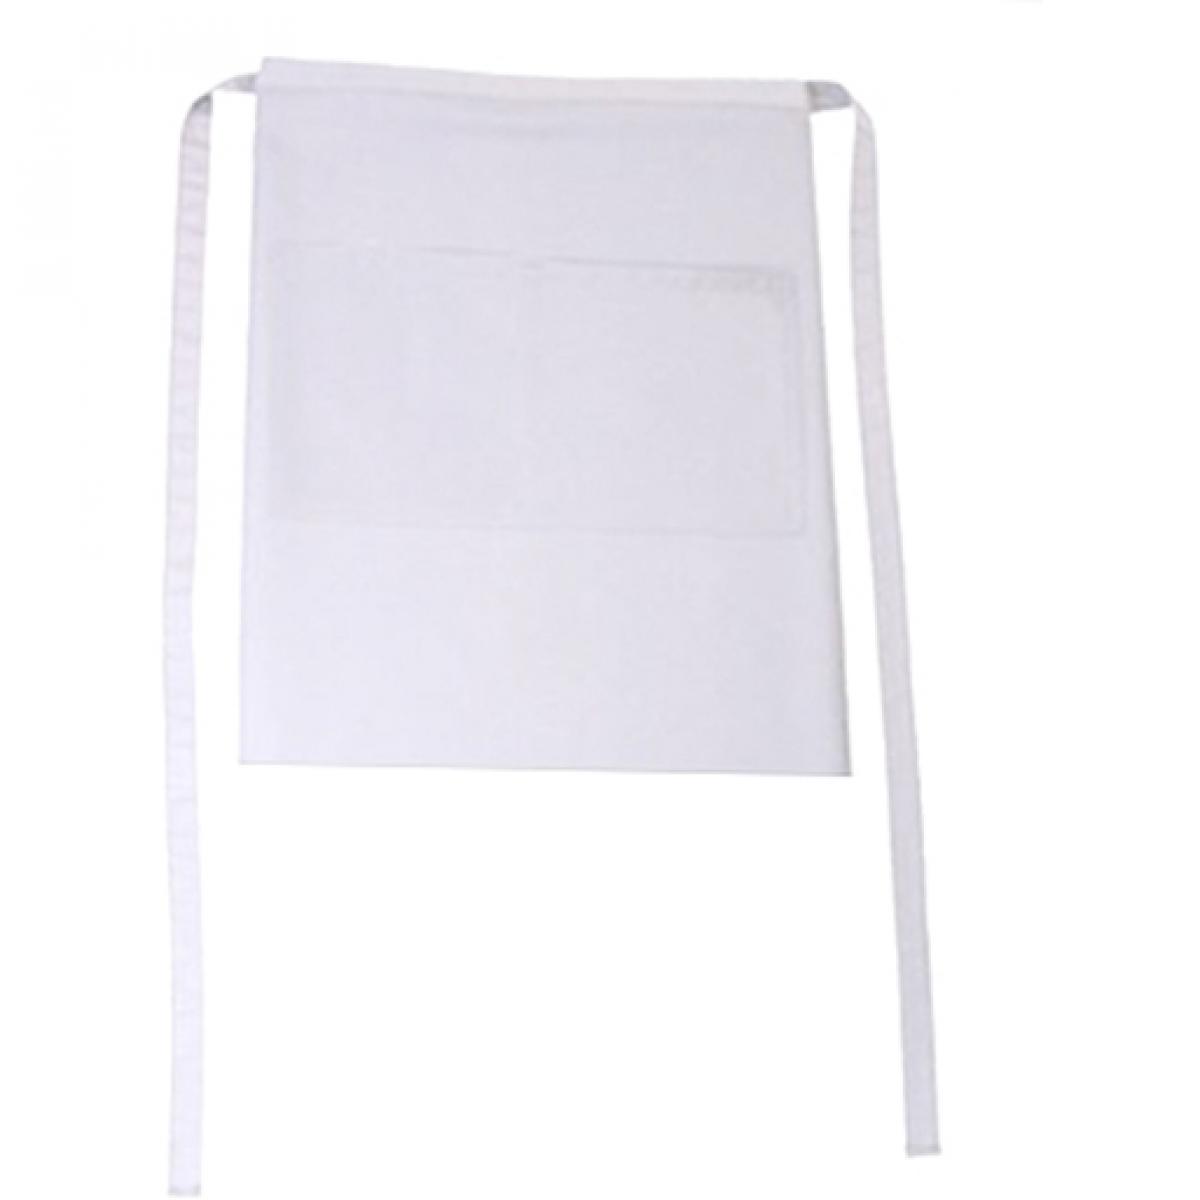 Hersteller: CG Workwear Herstellernummer: 01262-01 Artikelbezeichnung: Bistroschürze Roma Bag 50 x 78 cm Farbe: White